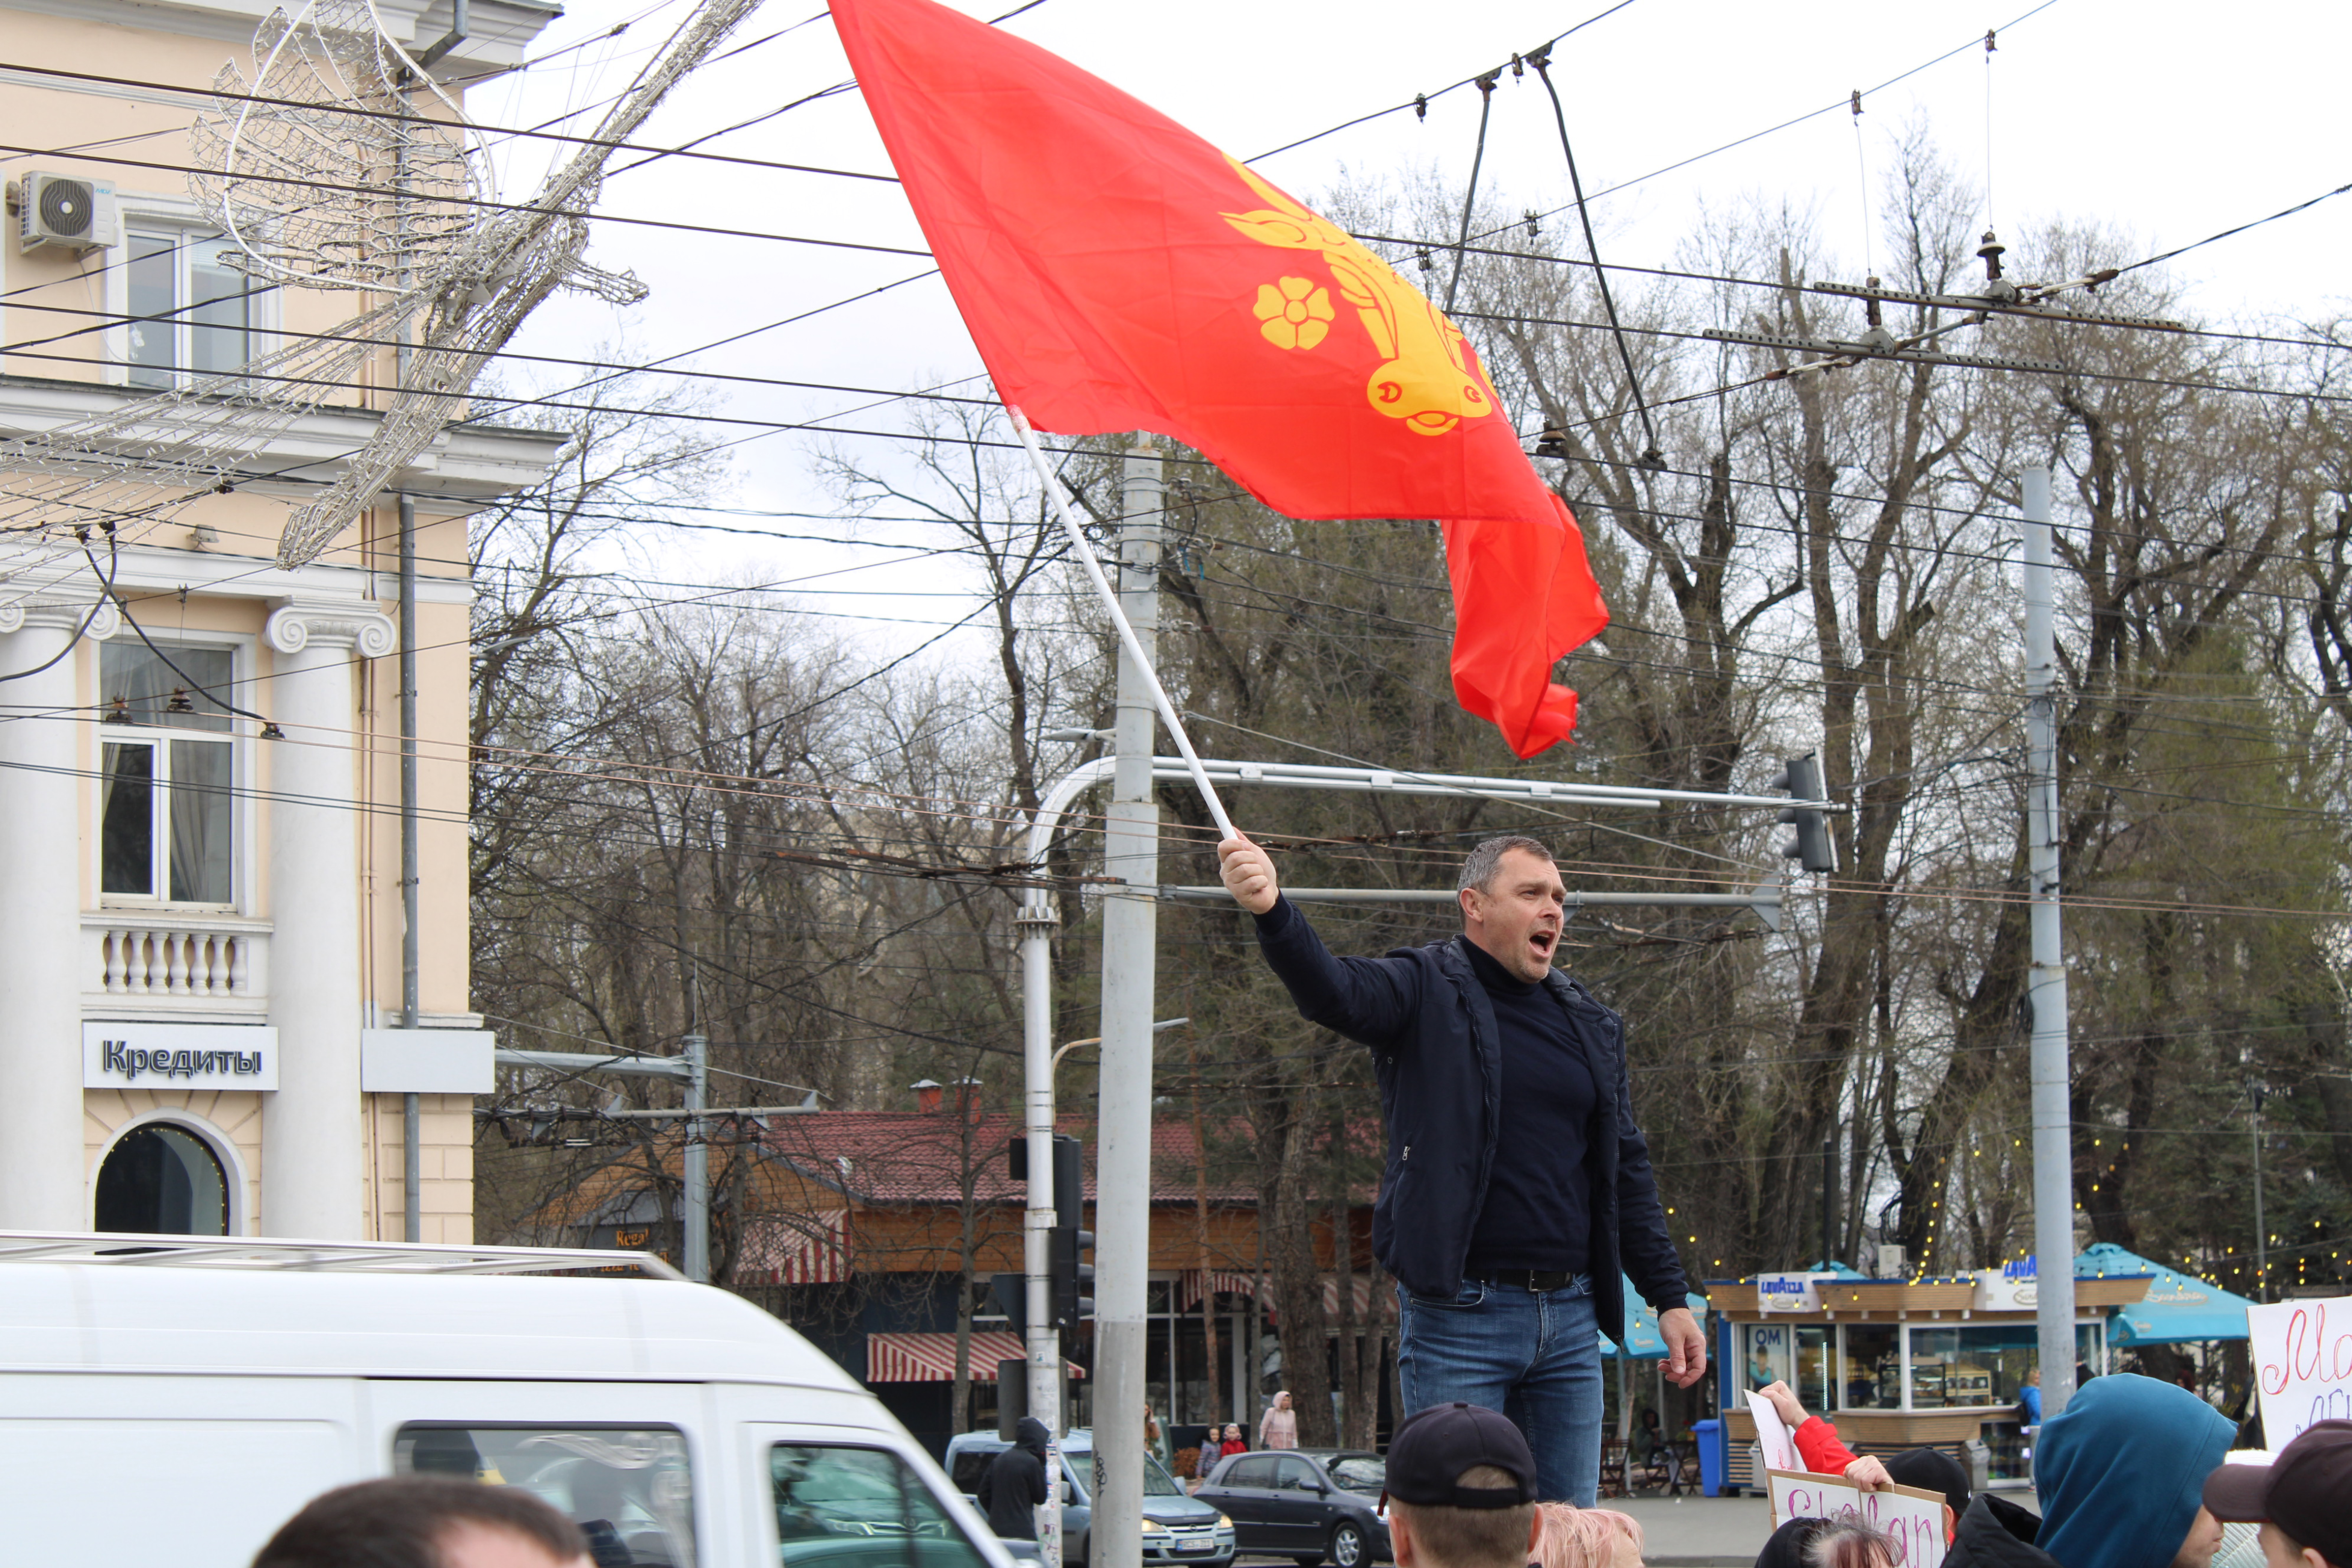 Leven met Russische dreiging: in Moldavië is de oorlog nooit ver weg